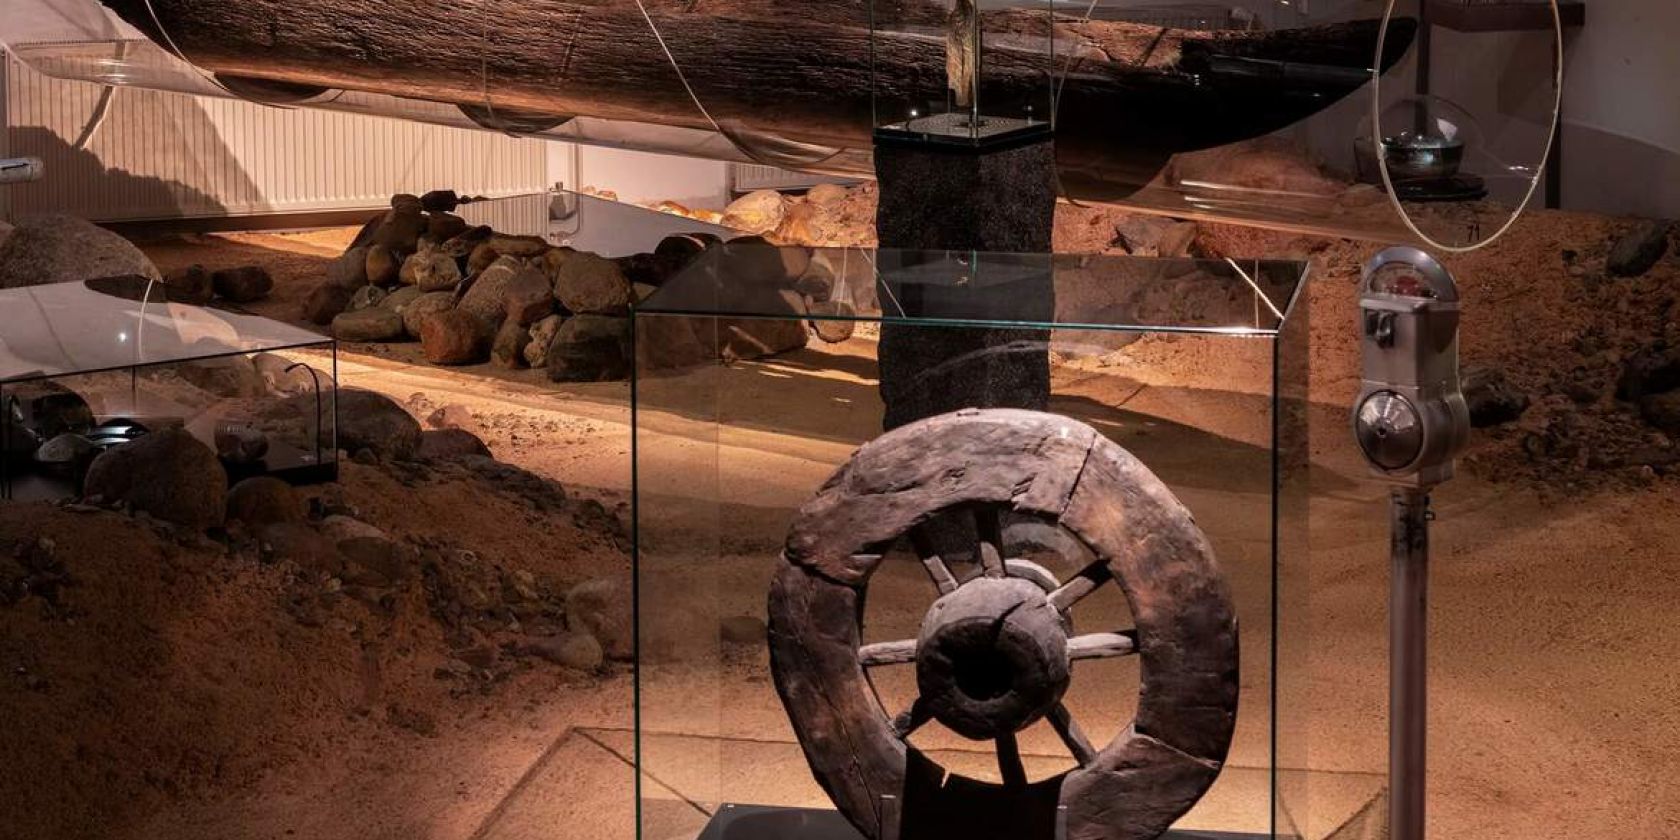 Archäologische Ausstellung, Wagenrad und Einbaum, © Archäologisches Museum Hamburg